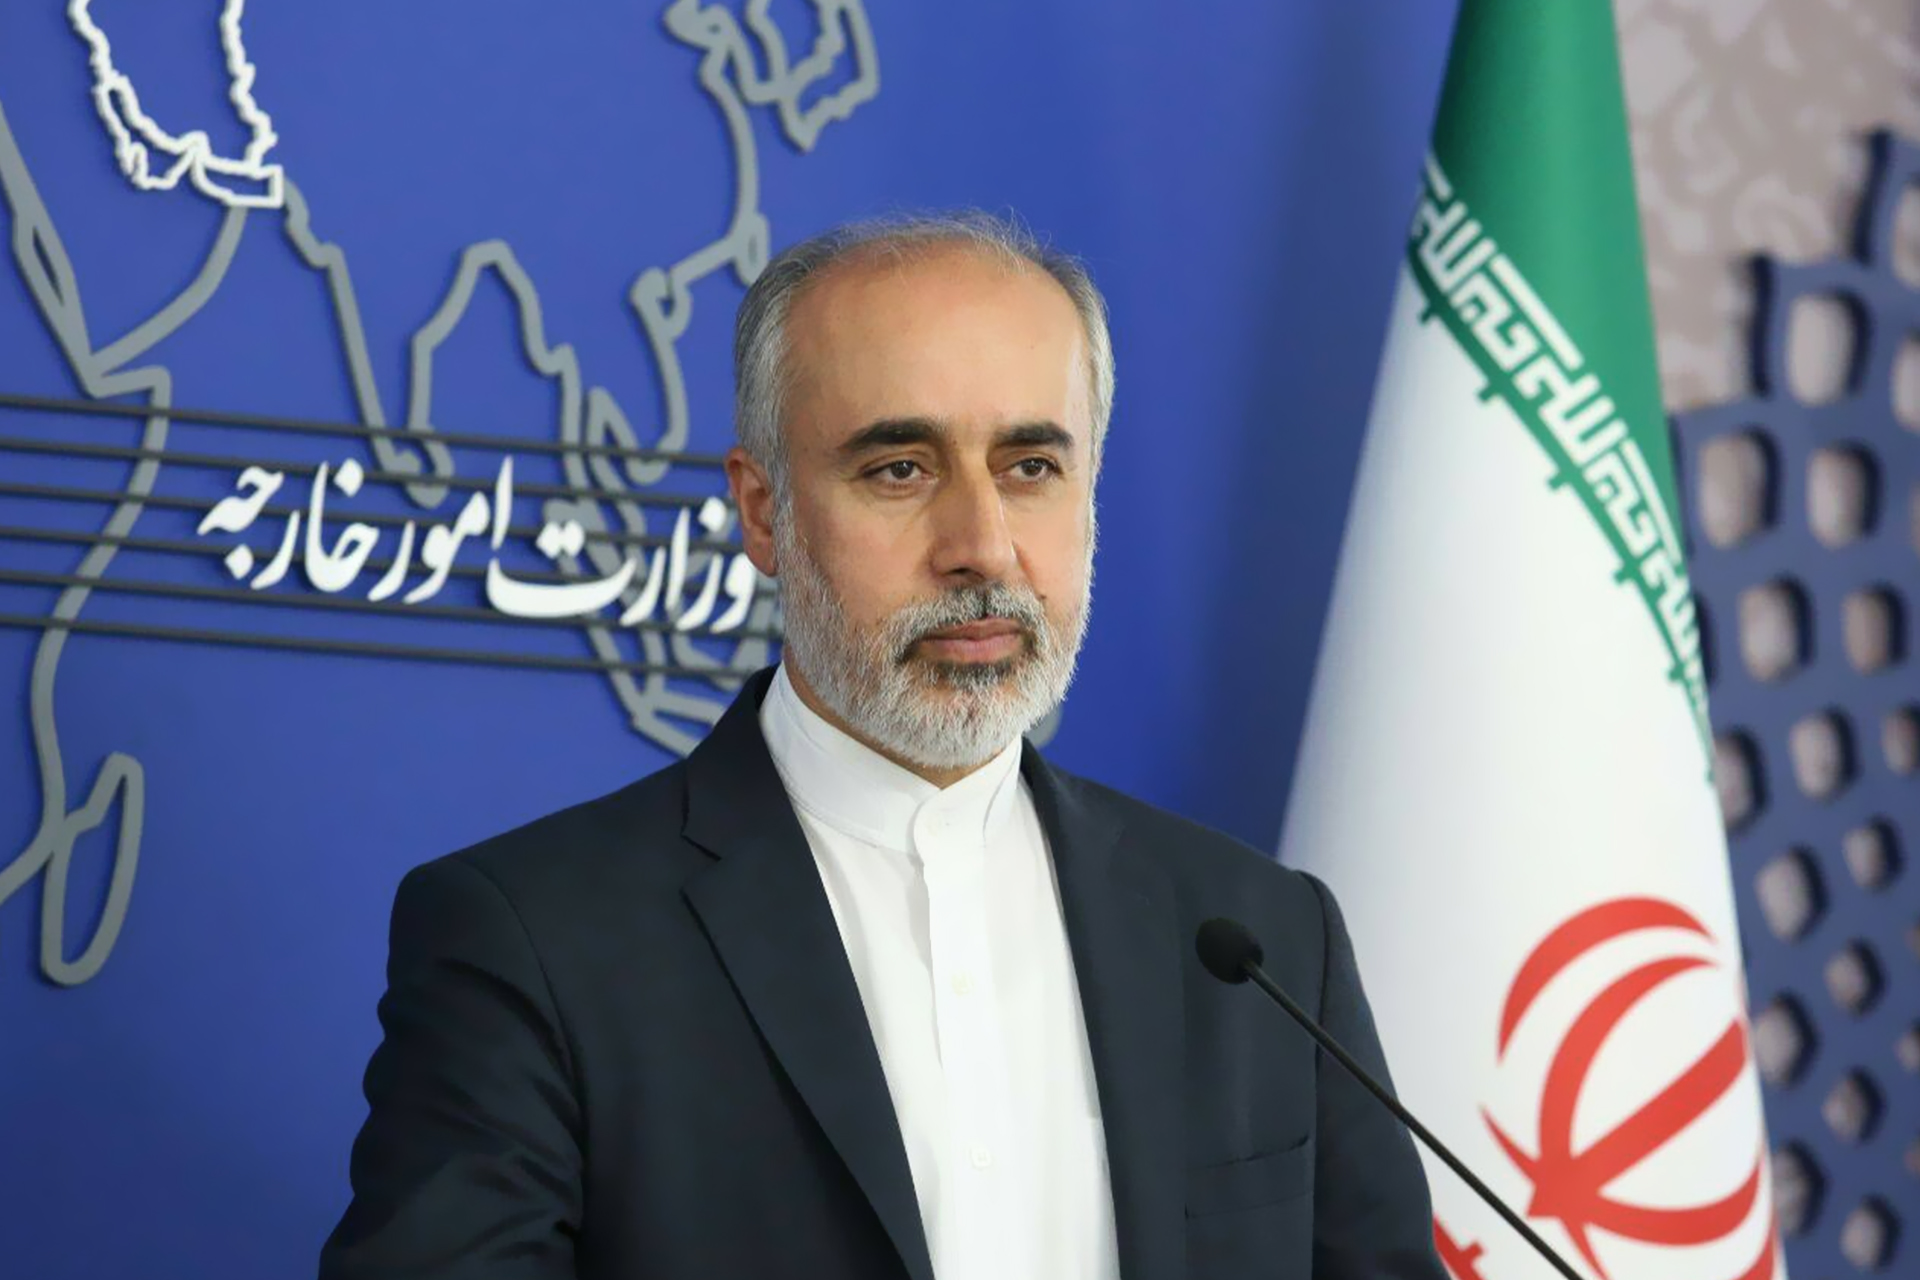 إيران ترد على اتهامها بمواصلة تخصيب اليورانيوم | أخبار – البوكس نيوز